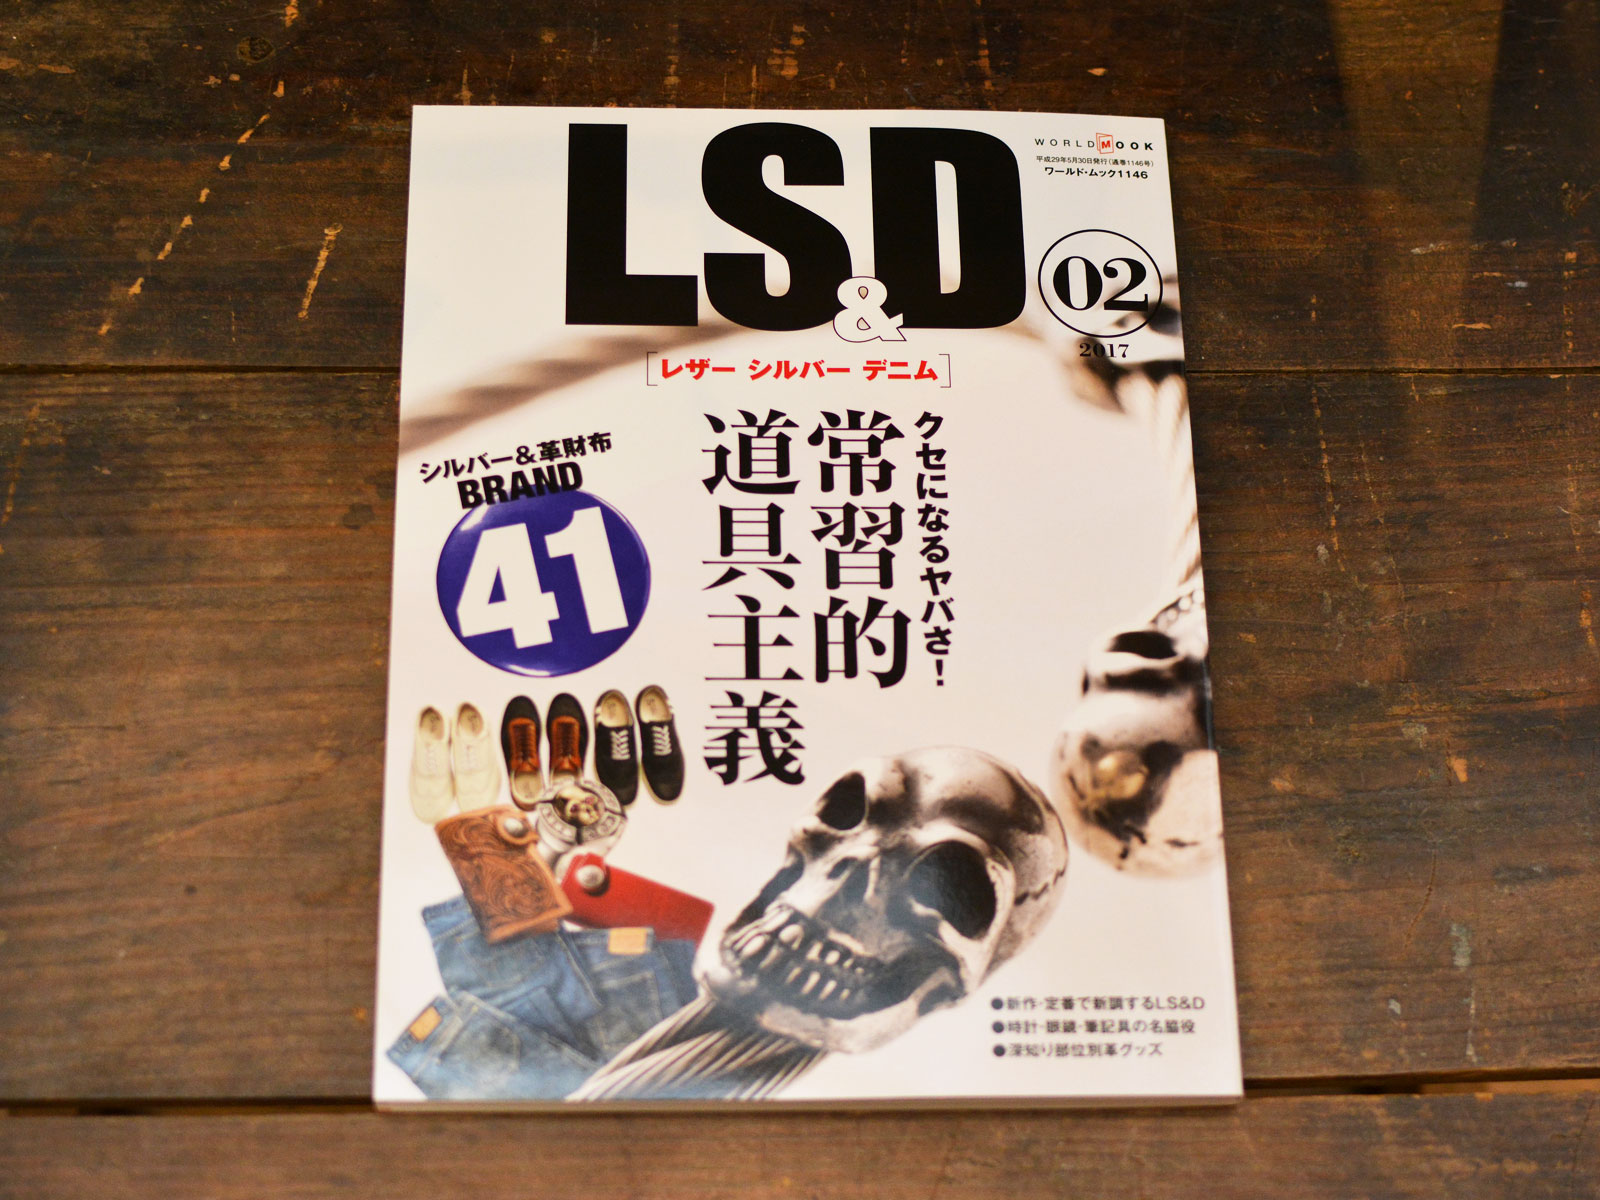 雑誌掲載のお知らせ「LS&D レザー シルバー デニム02」